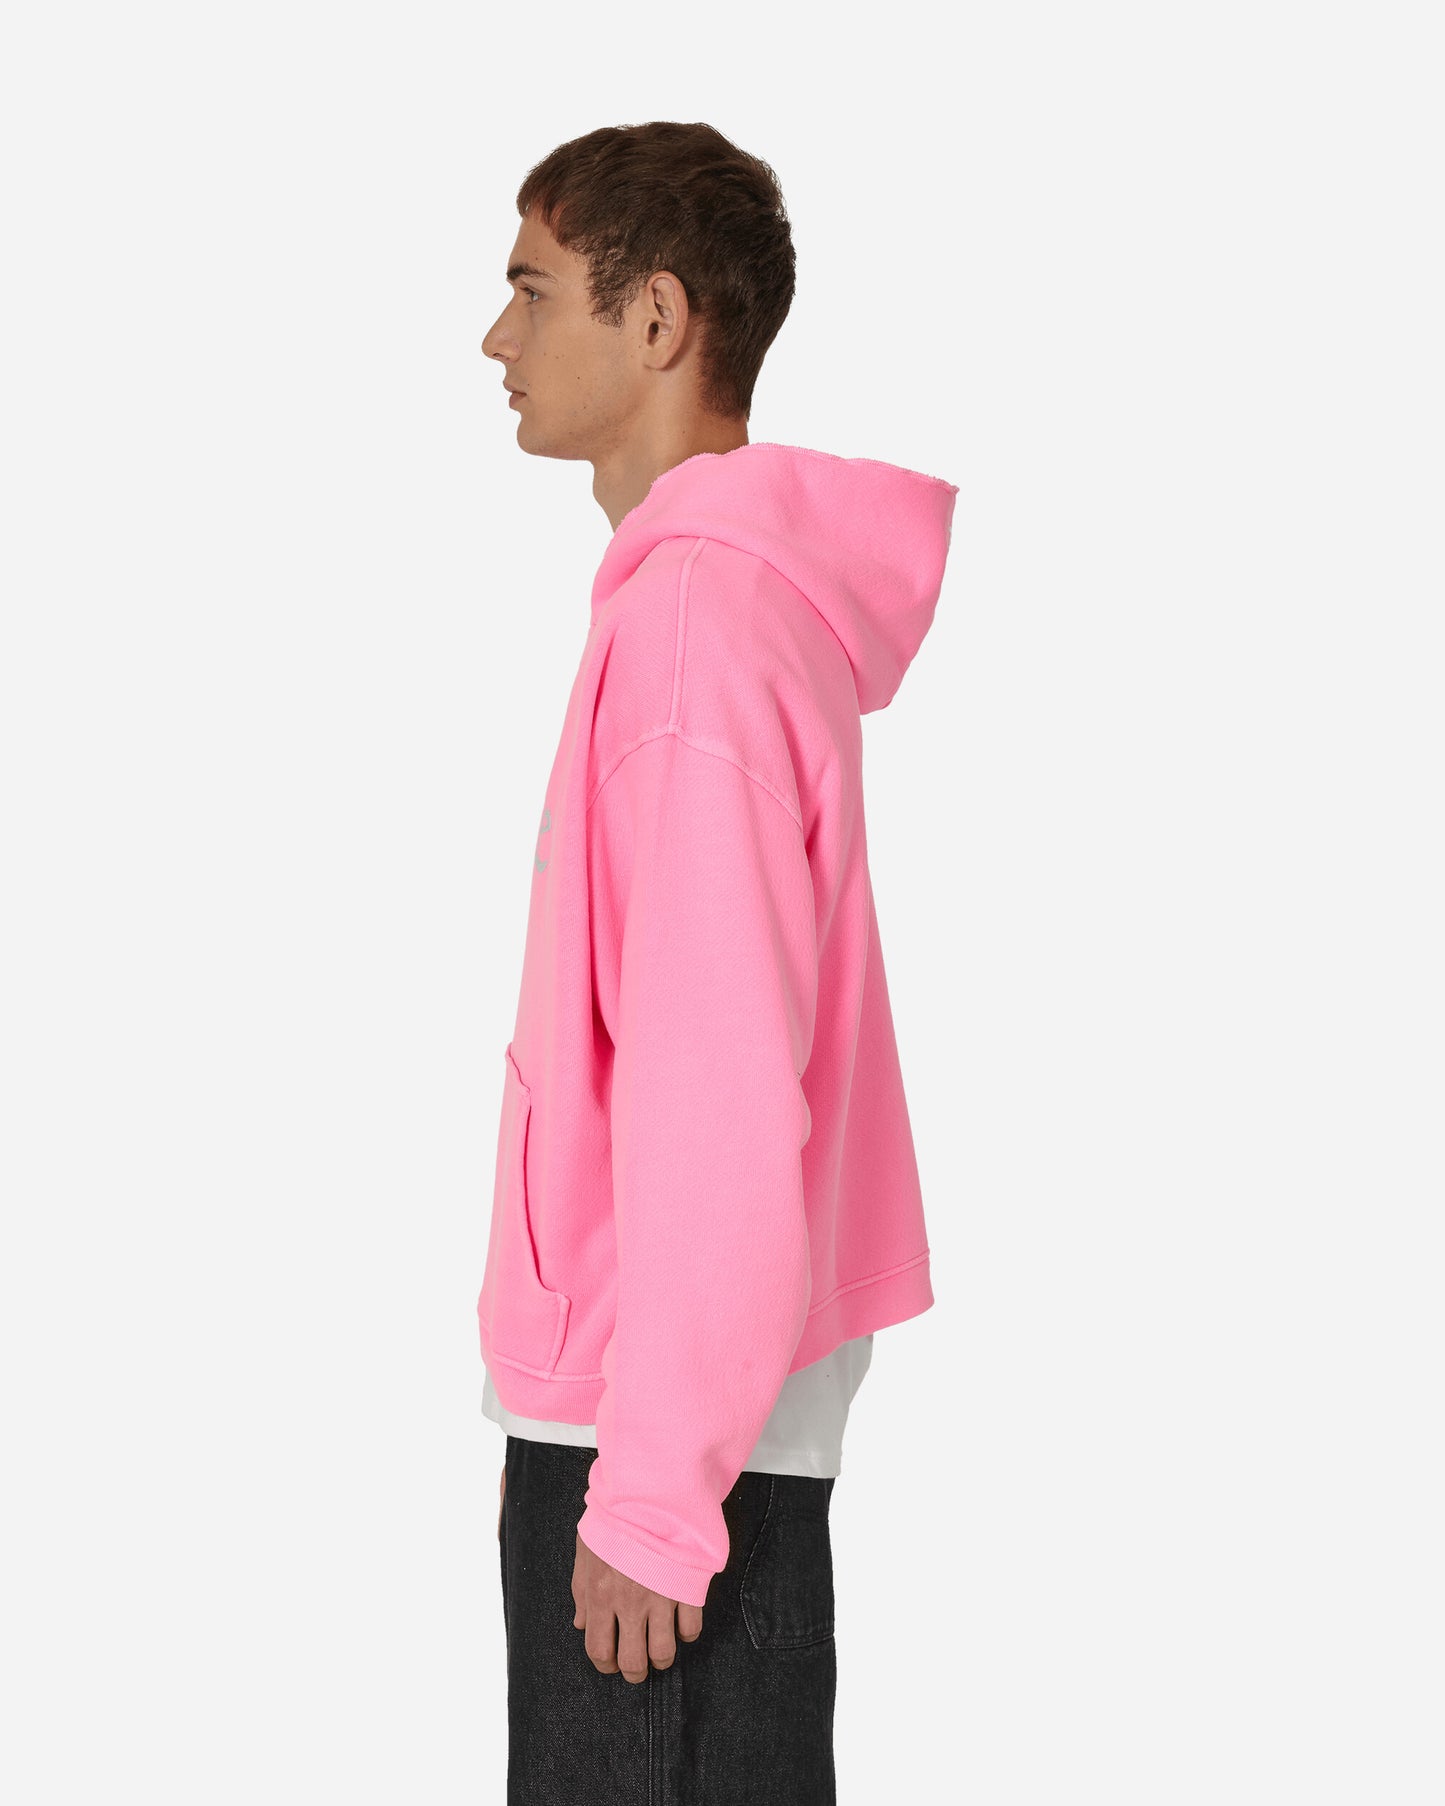 ERL Silver Printed Venice Hoodie Pink Sweatshirts Hoodies ERL07T031 1